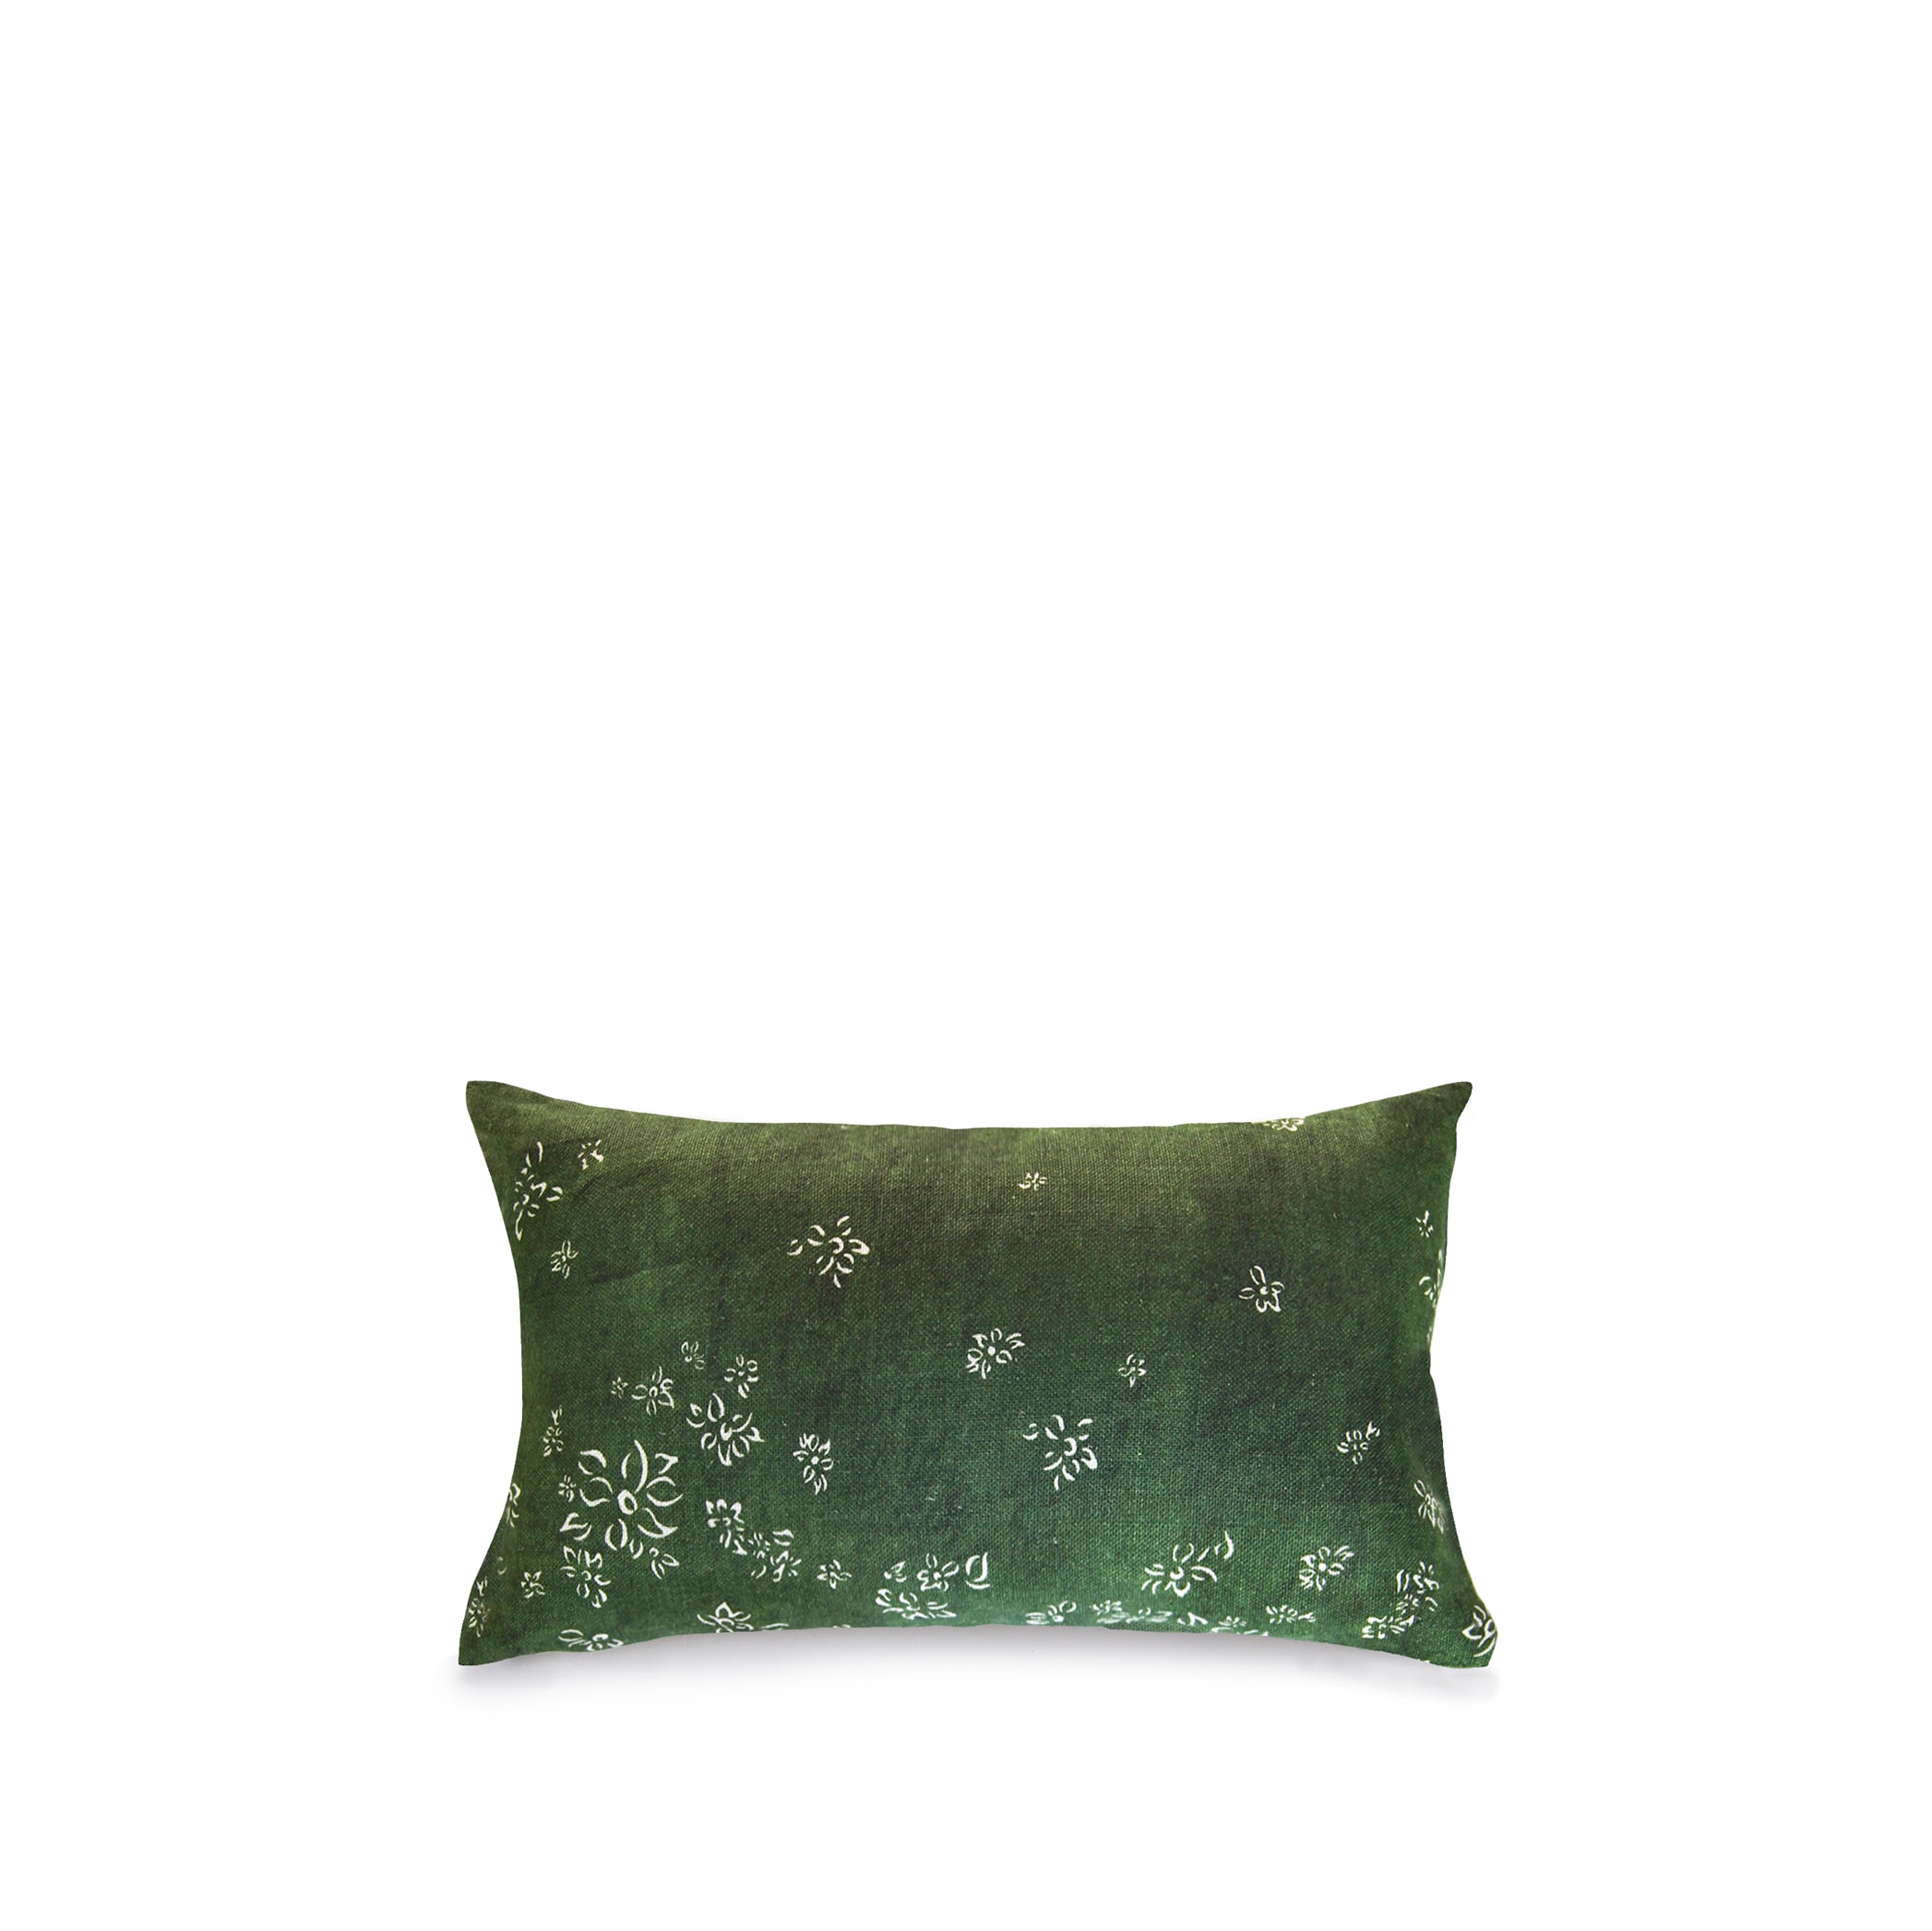 Heavy Linen Falling Flower Cushion in Full Field Green, 50cm x 30cm